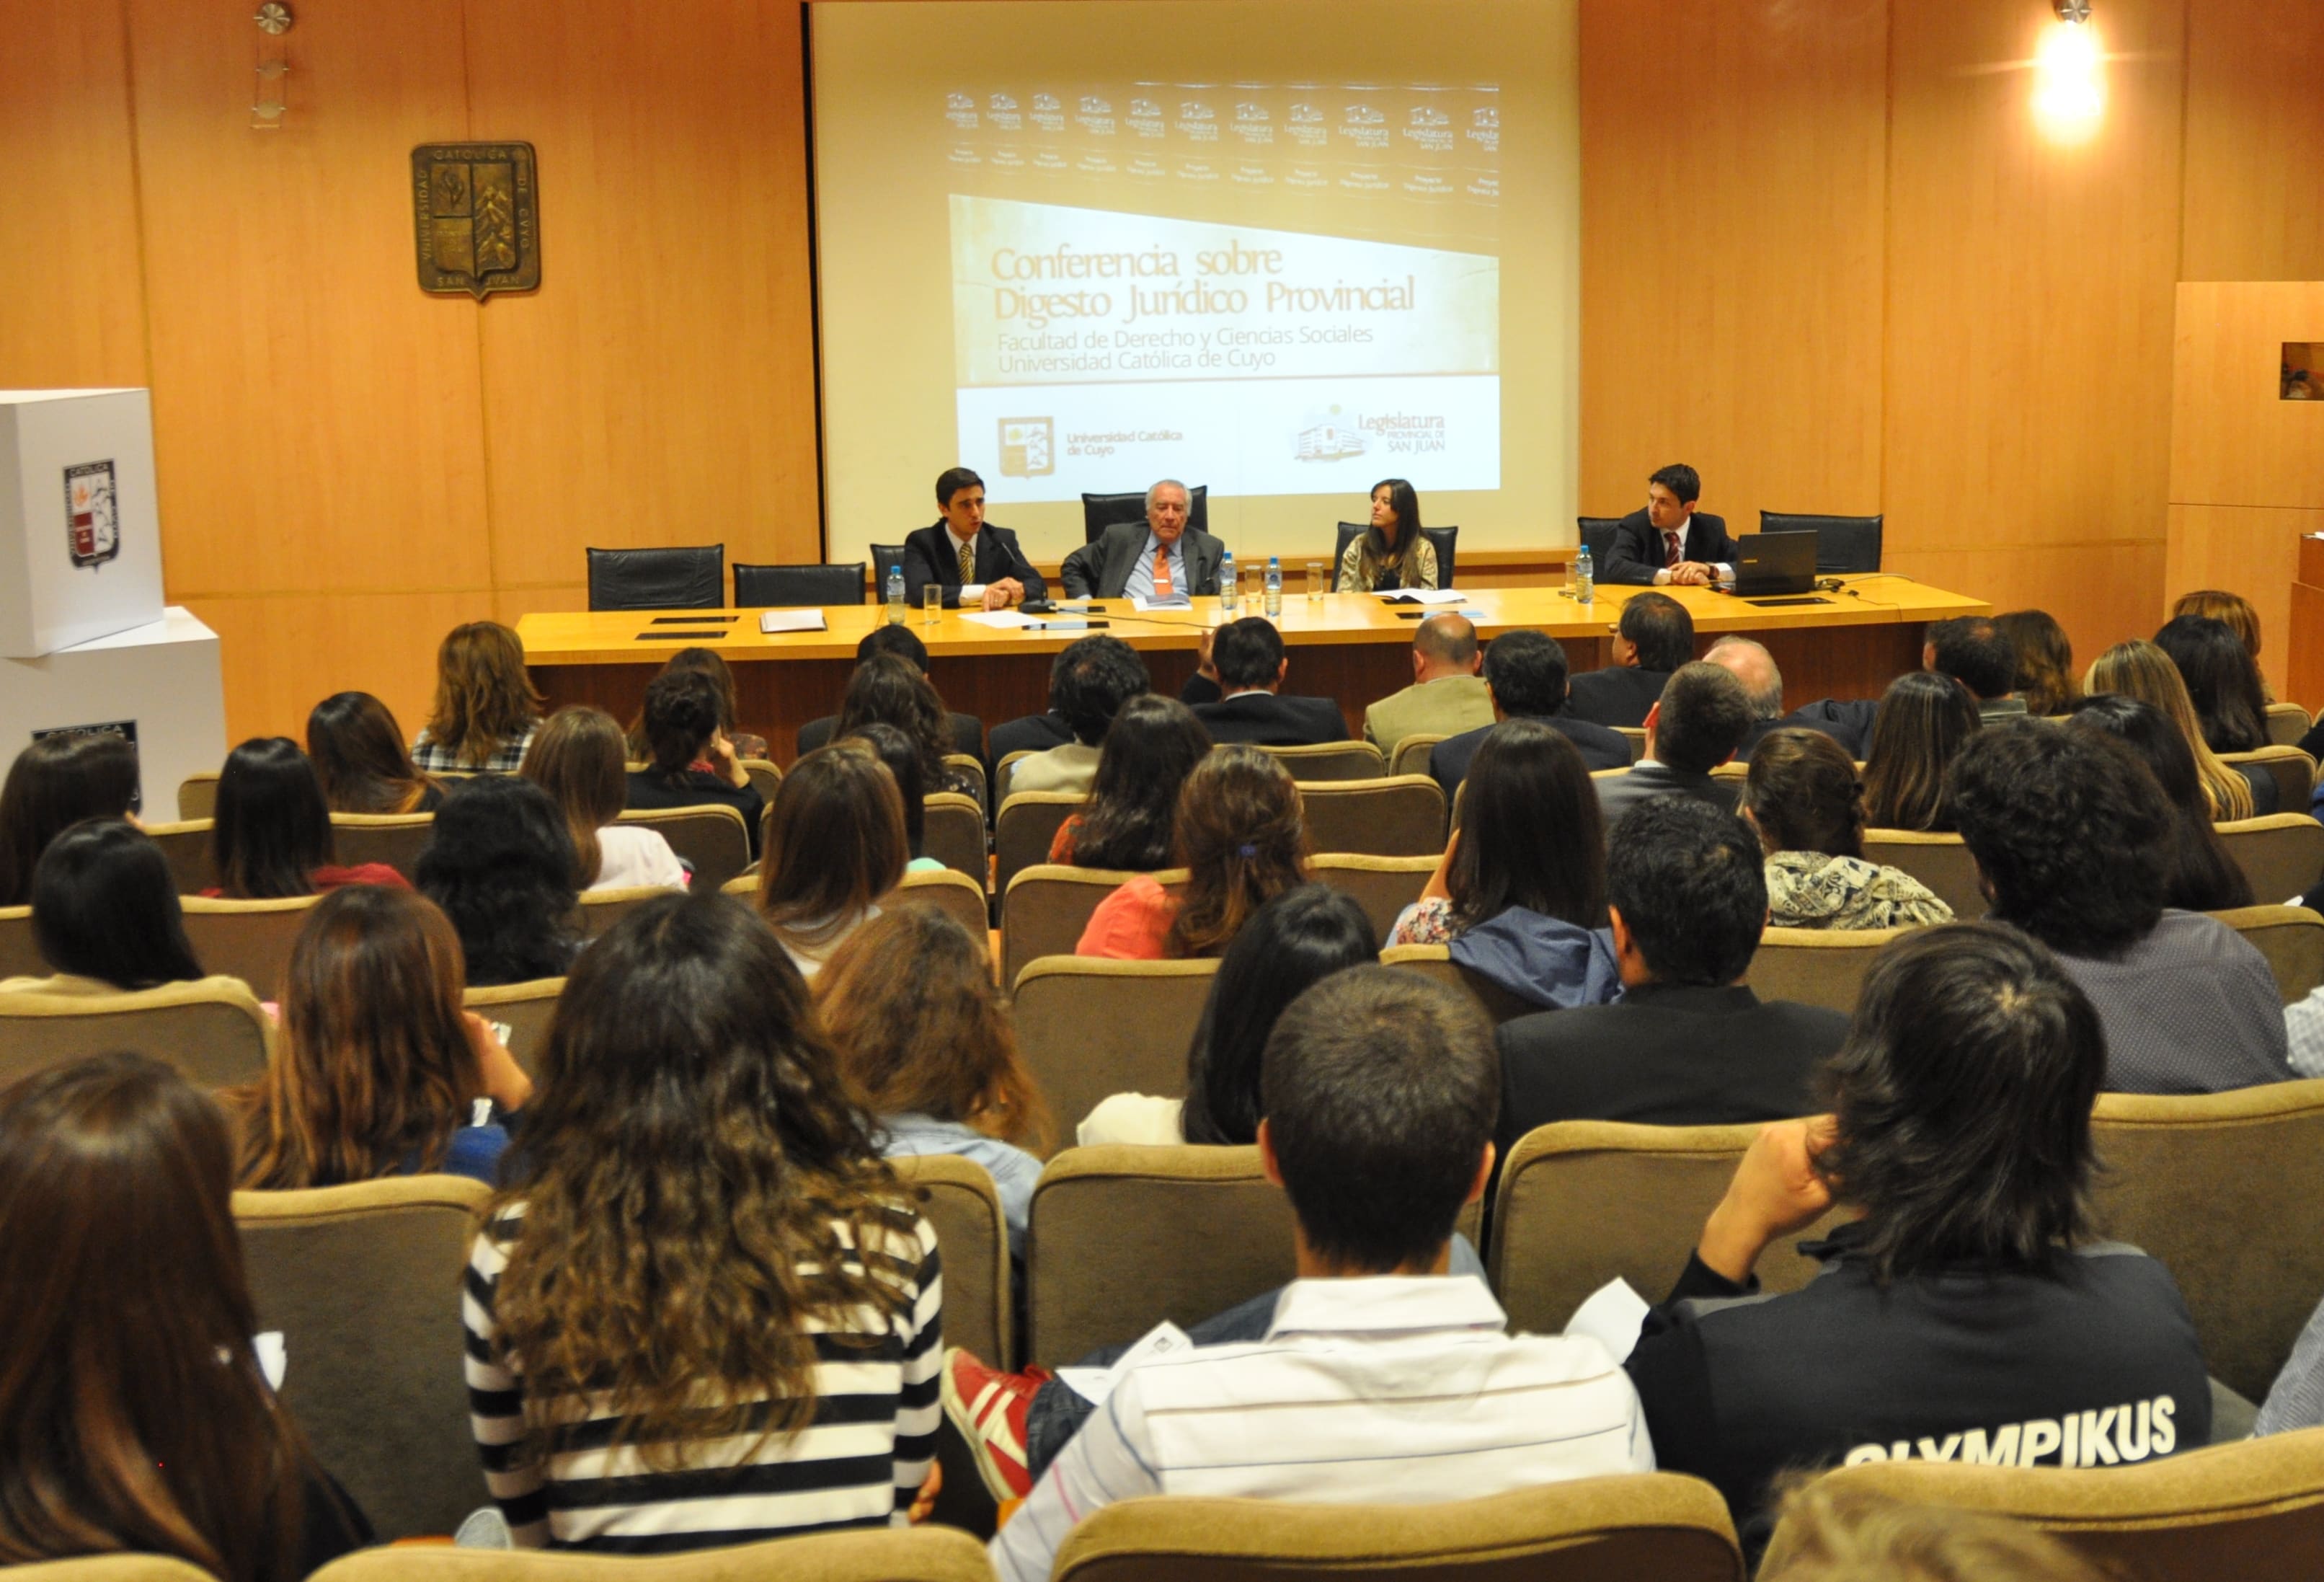 Se desarrolló la conferencia sobre el Digesto Jurídico Provincial en la Universidad Católica de Cuyo.